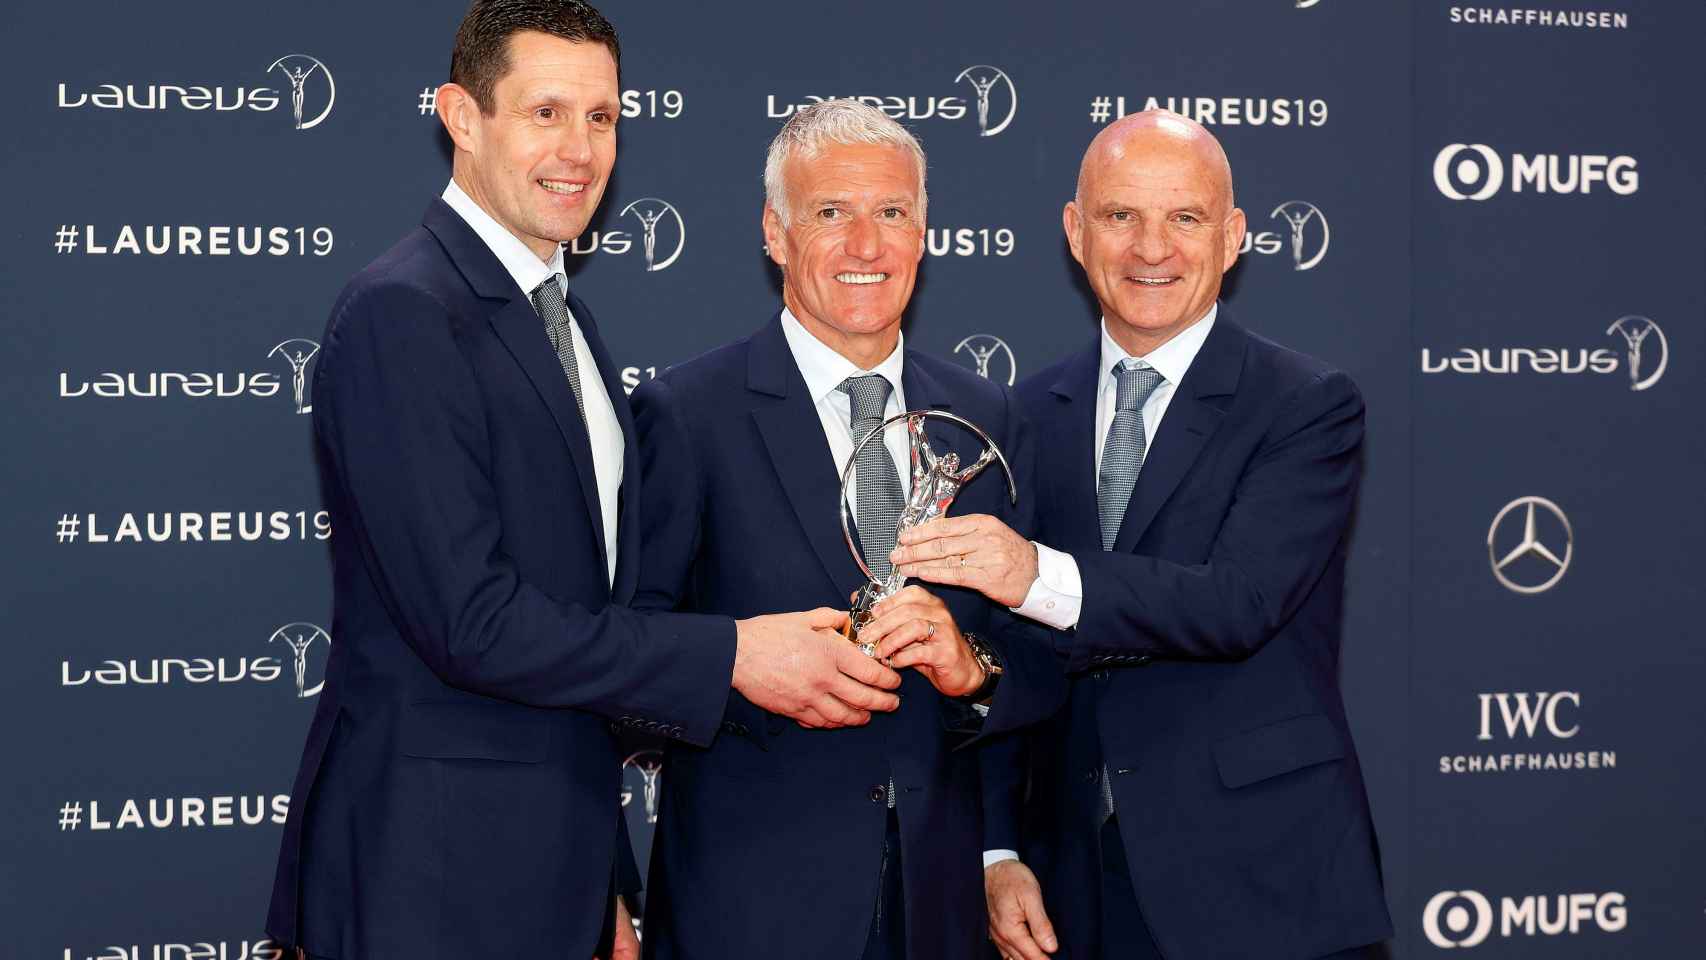 Franck Raviot, Didier Deschamps y Guy Stephan, de la selección francesa, tras recibir su Premio Laureus del deporte